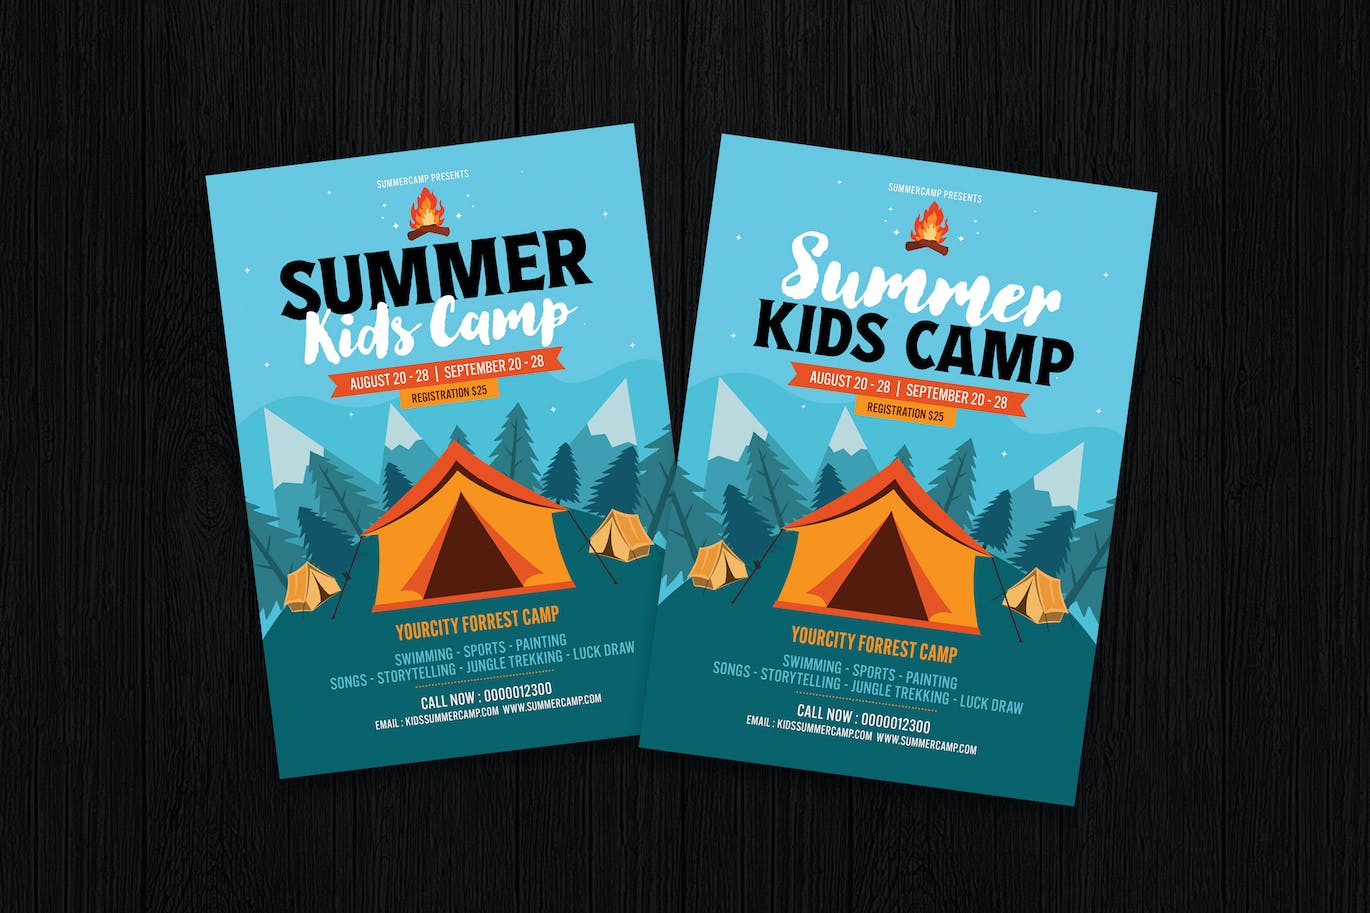 夏令营/儿童营宣传单设计 Summer Camp / Kids Camp 设计素材 第1张